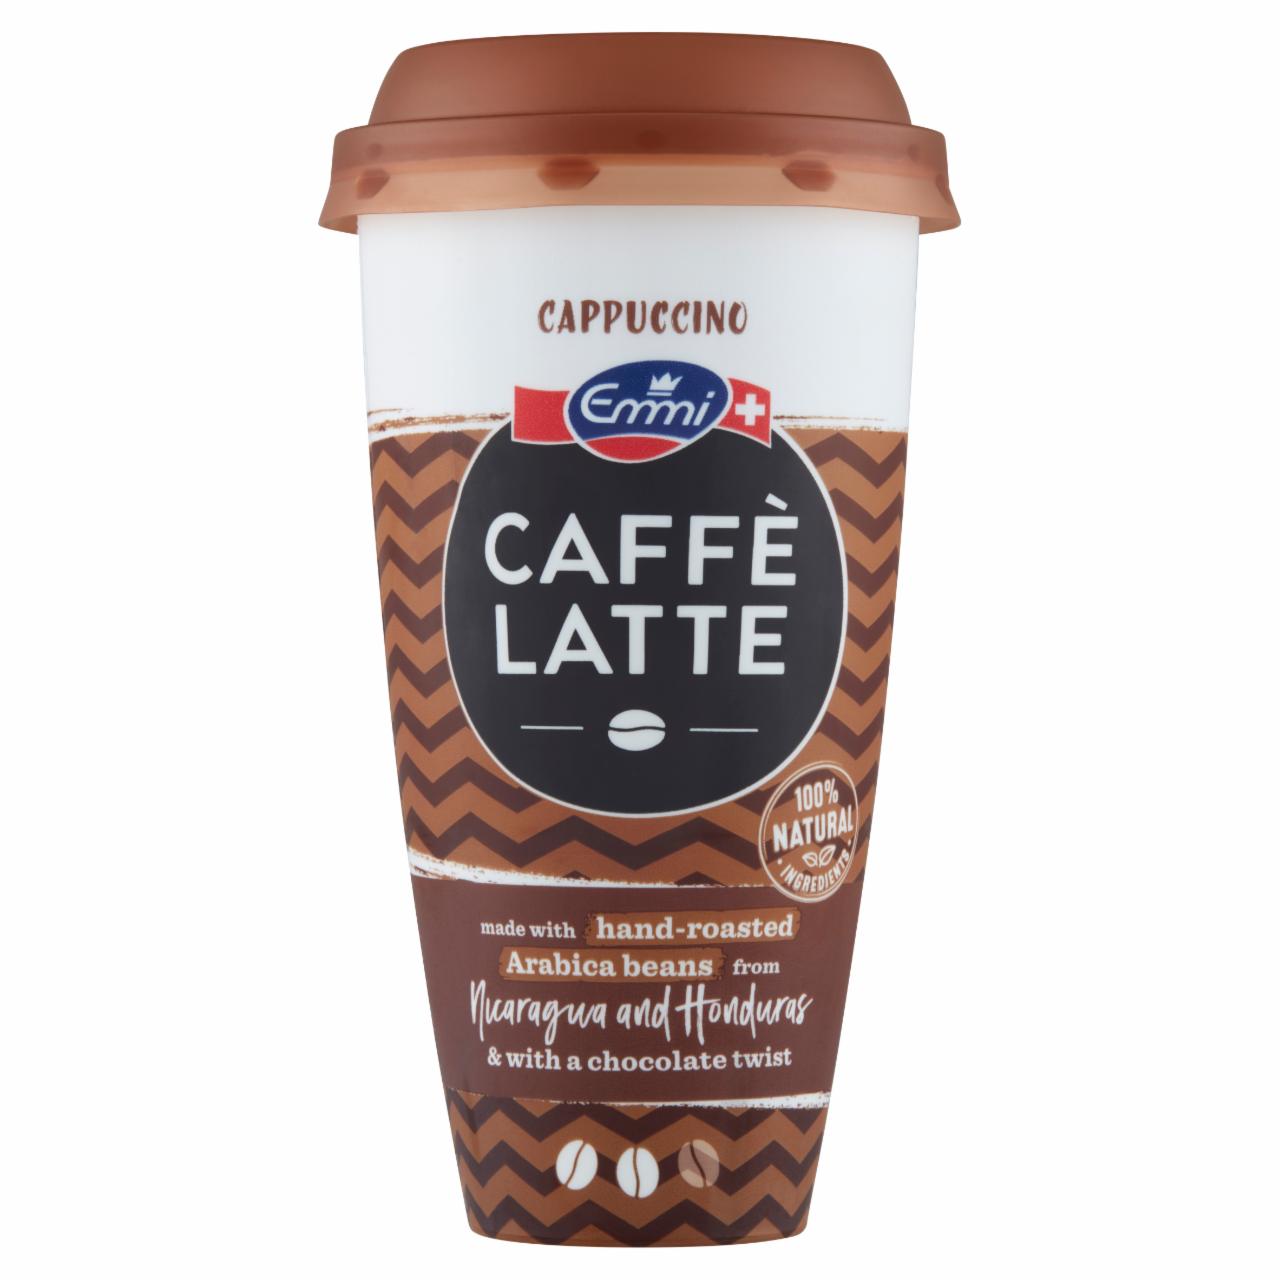 Képek - Emmi Caffé Latte Cappuccino jeges kávé arab kávéval, tejjel és kakaóporral 230 ml